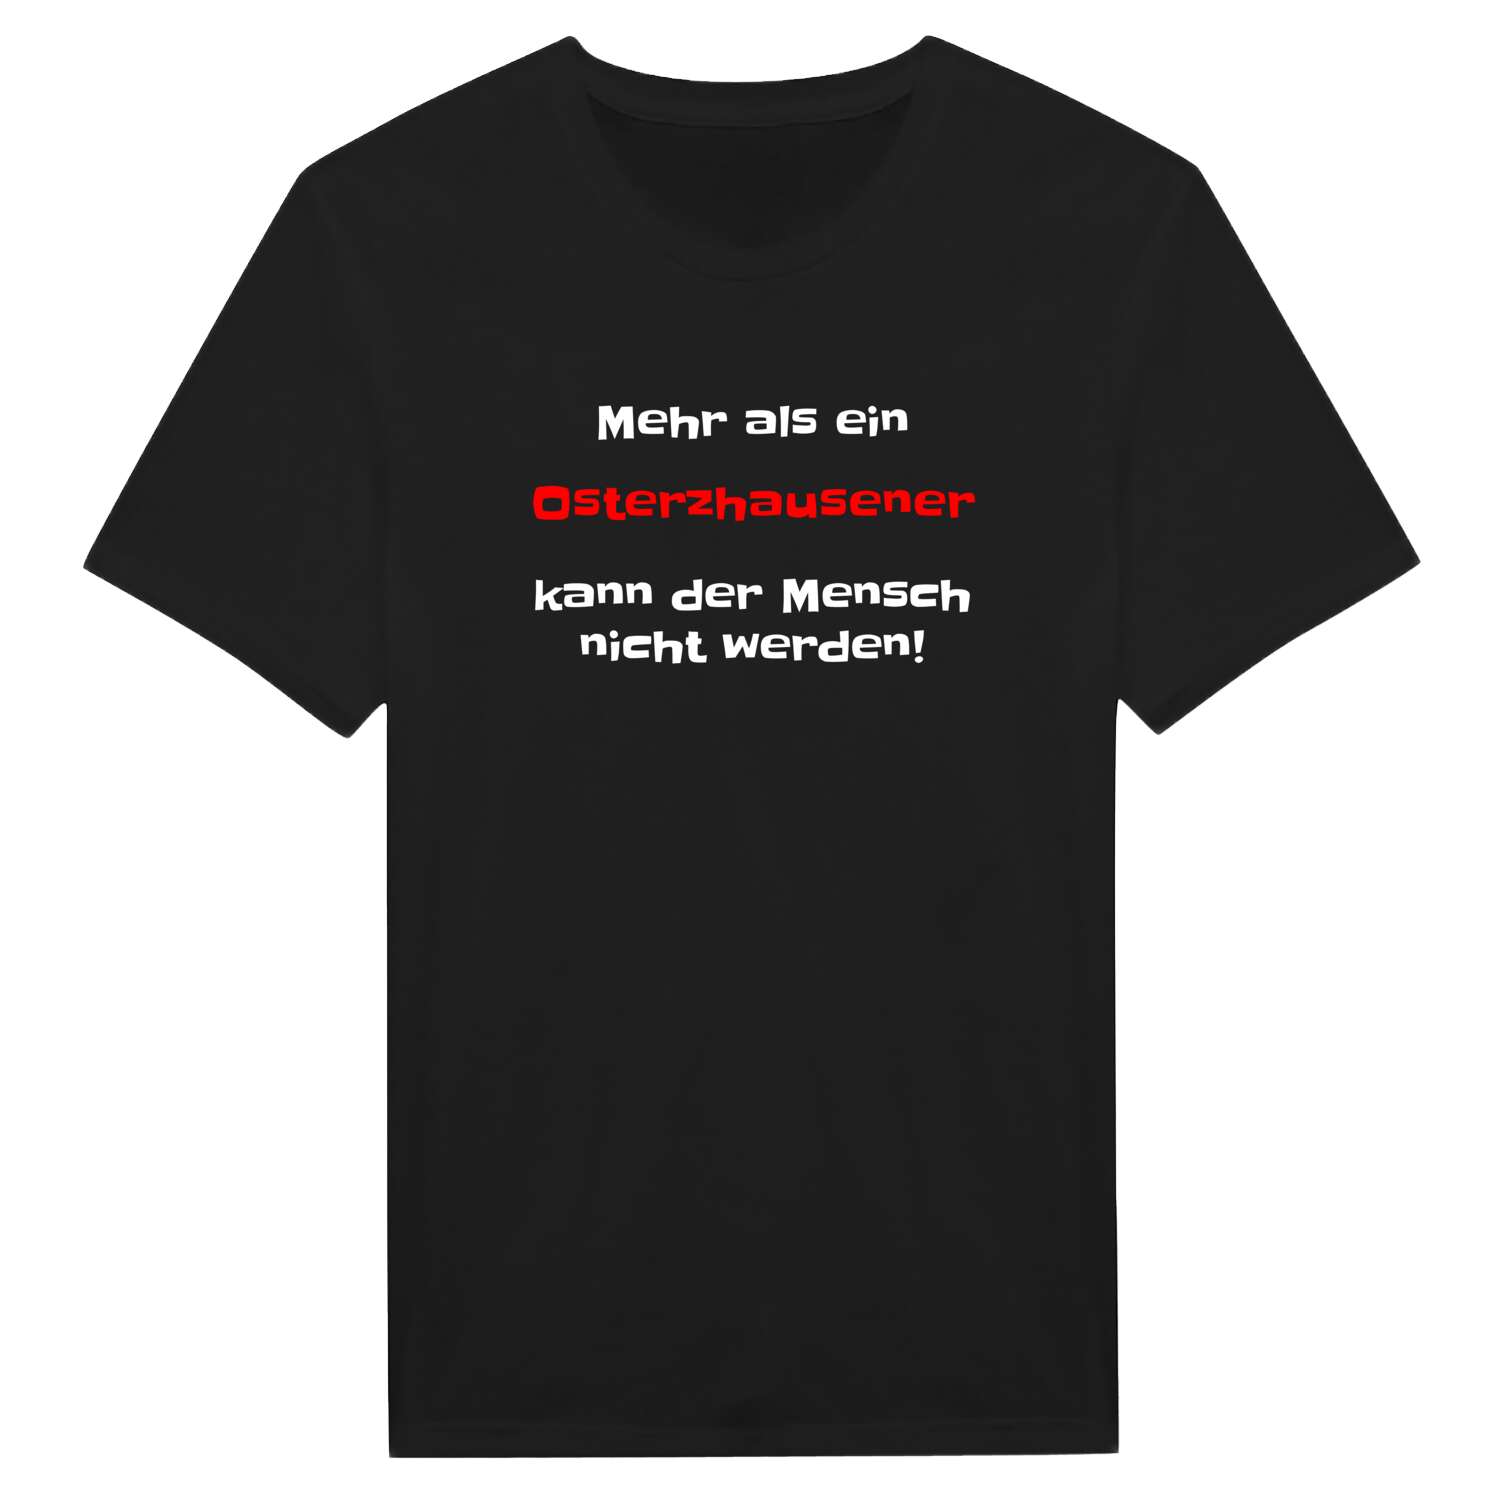 Osterzhausen T-Shirt »Mehr als ein«